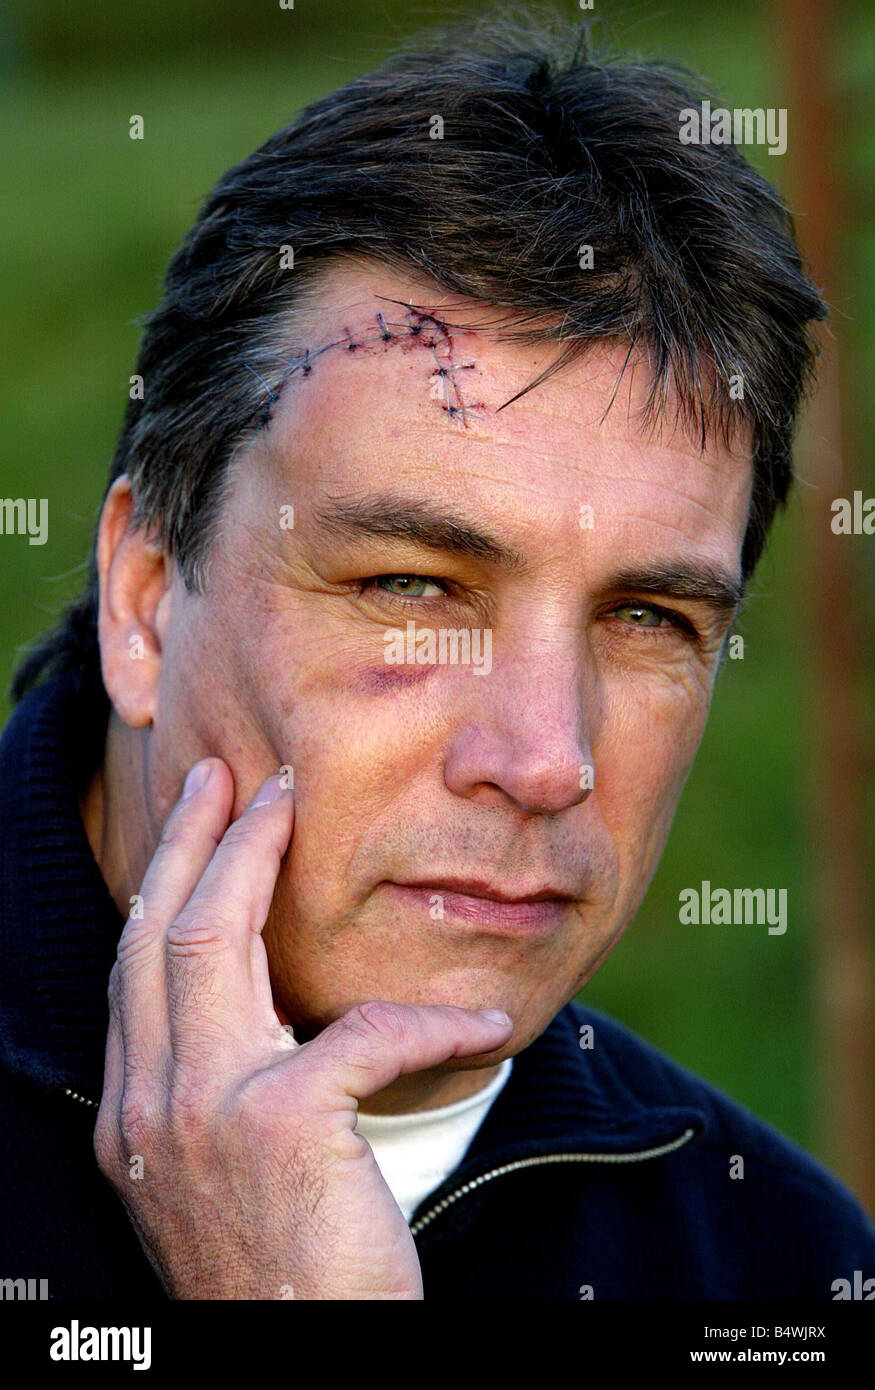 John Inverdale photographiée avec la blessure à la tête subies lors de match de rugby samedi dernier Banque D'Images